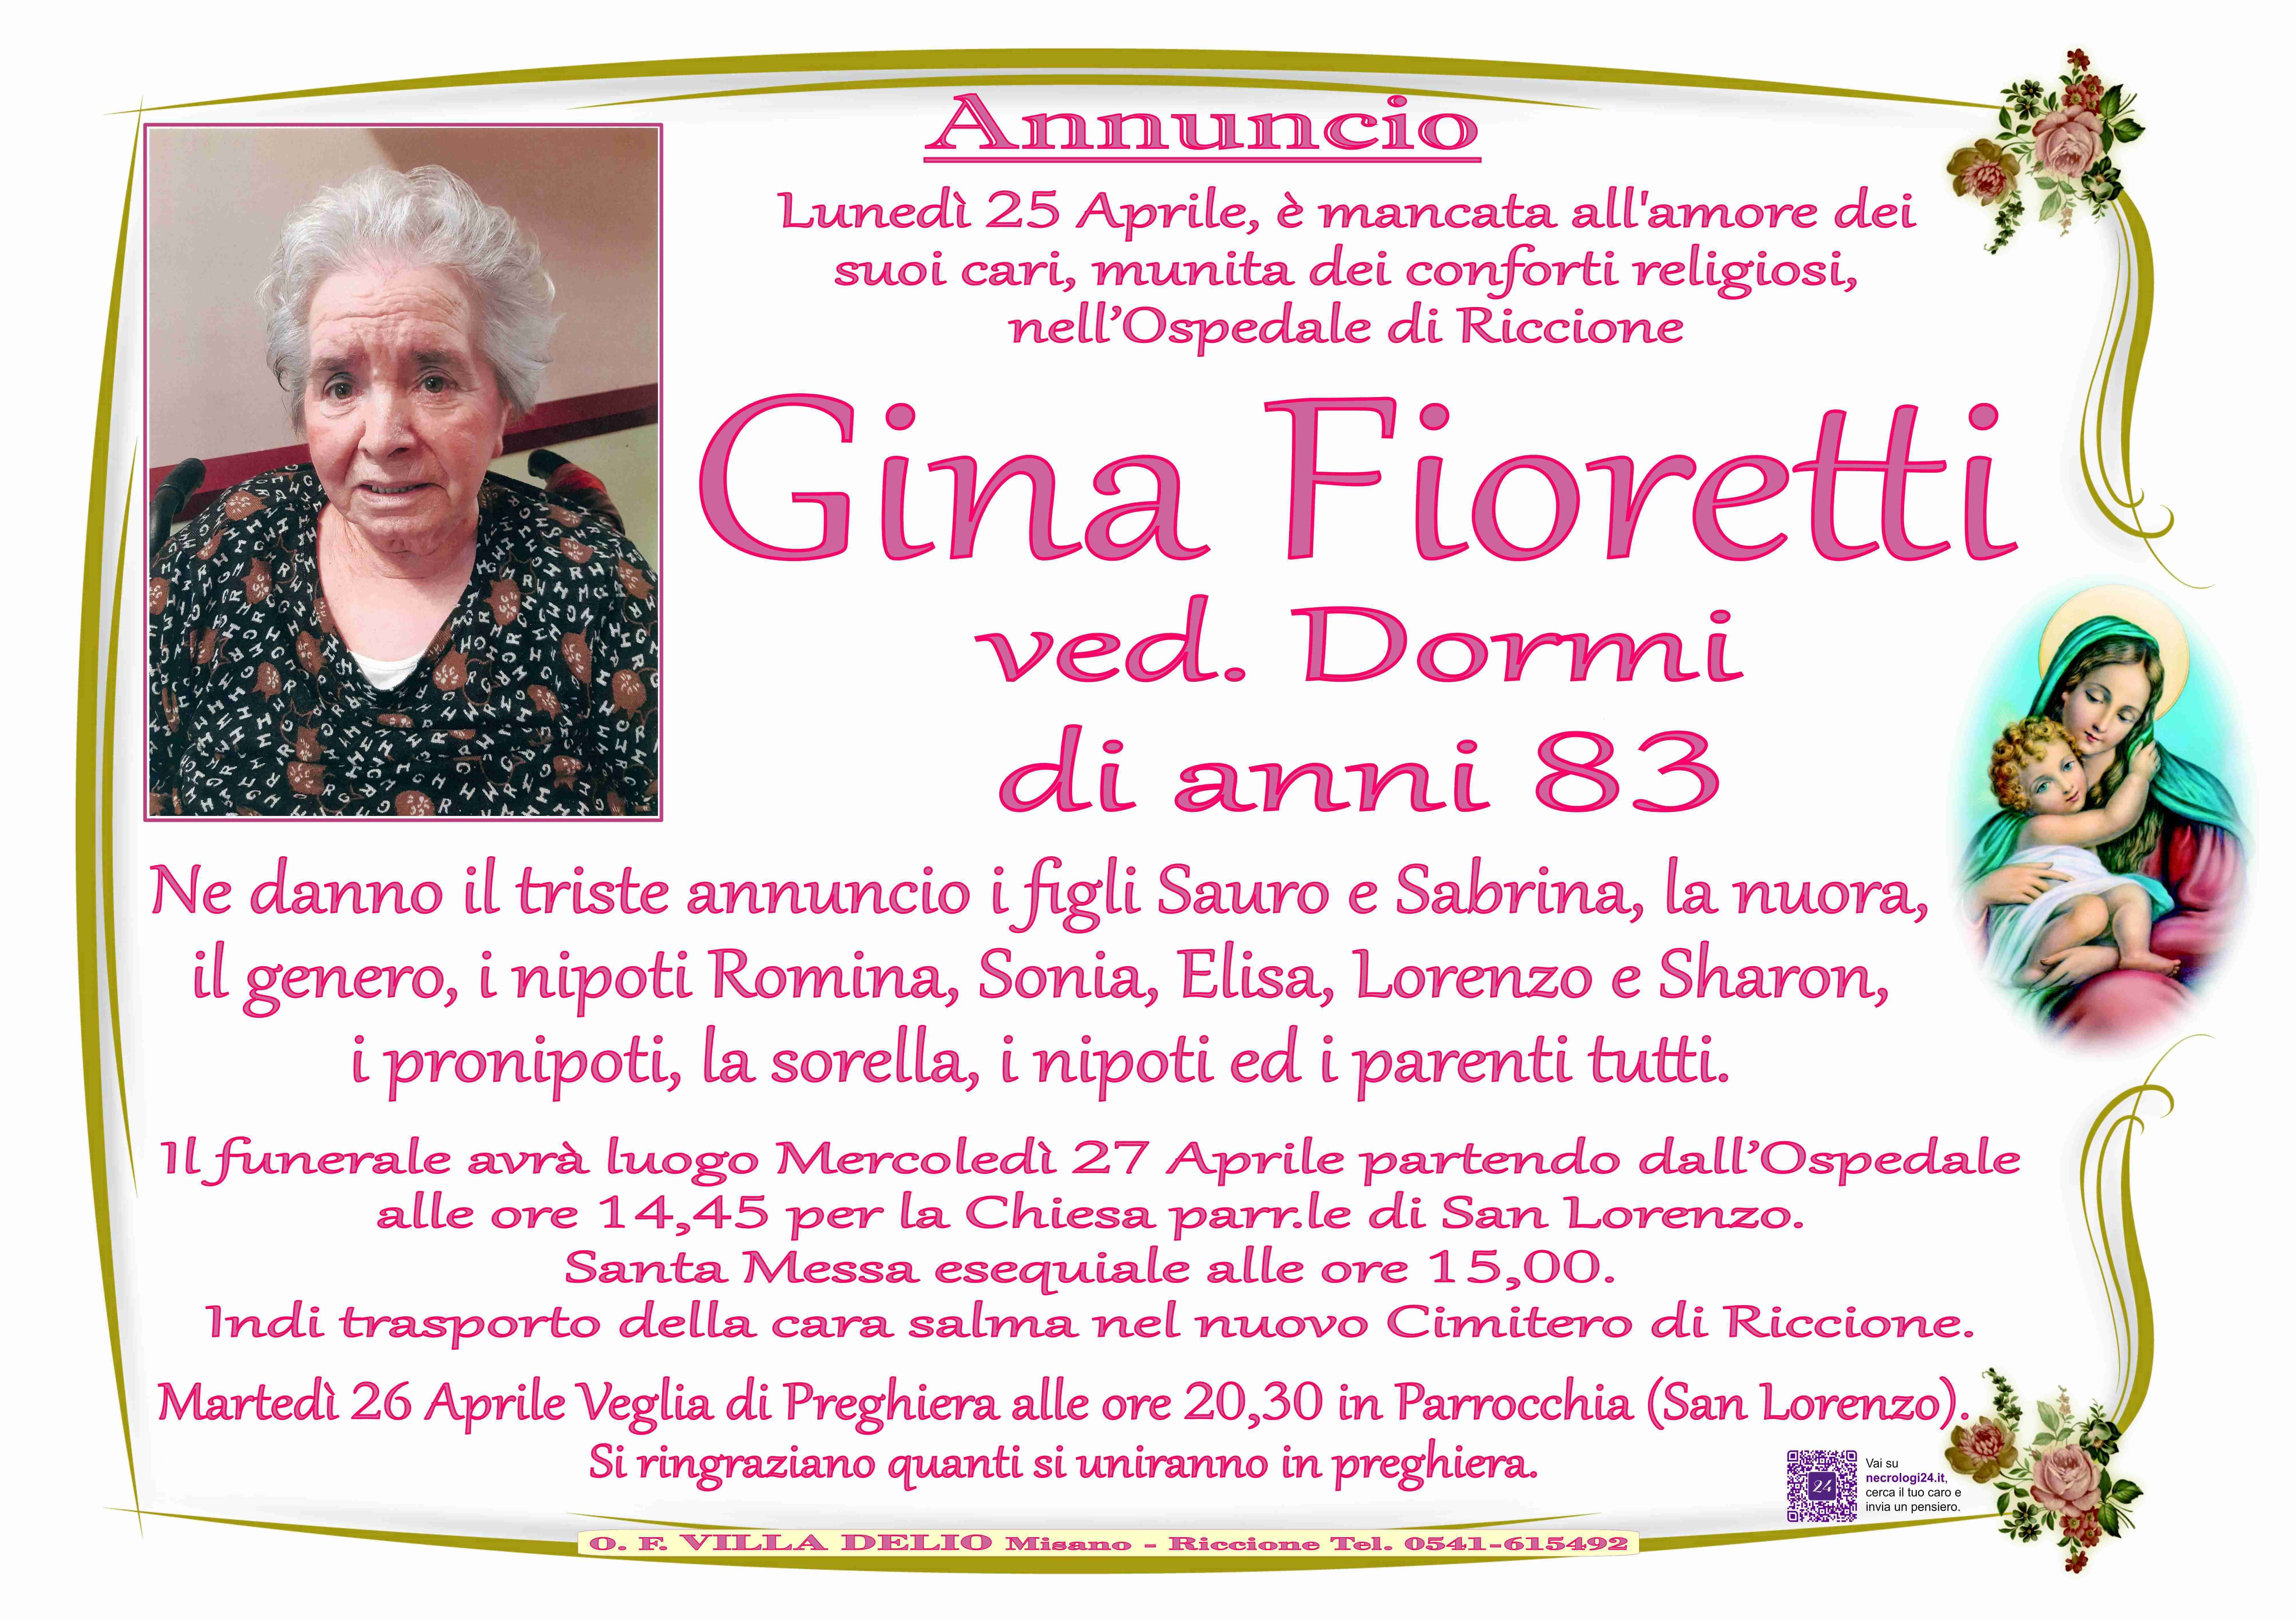 Gina Fioretti